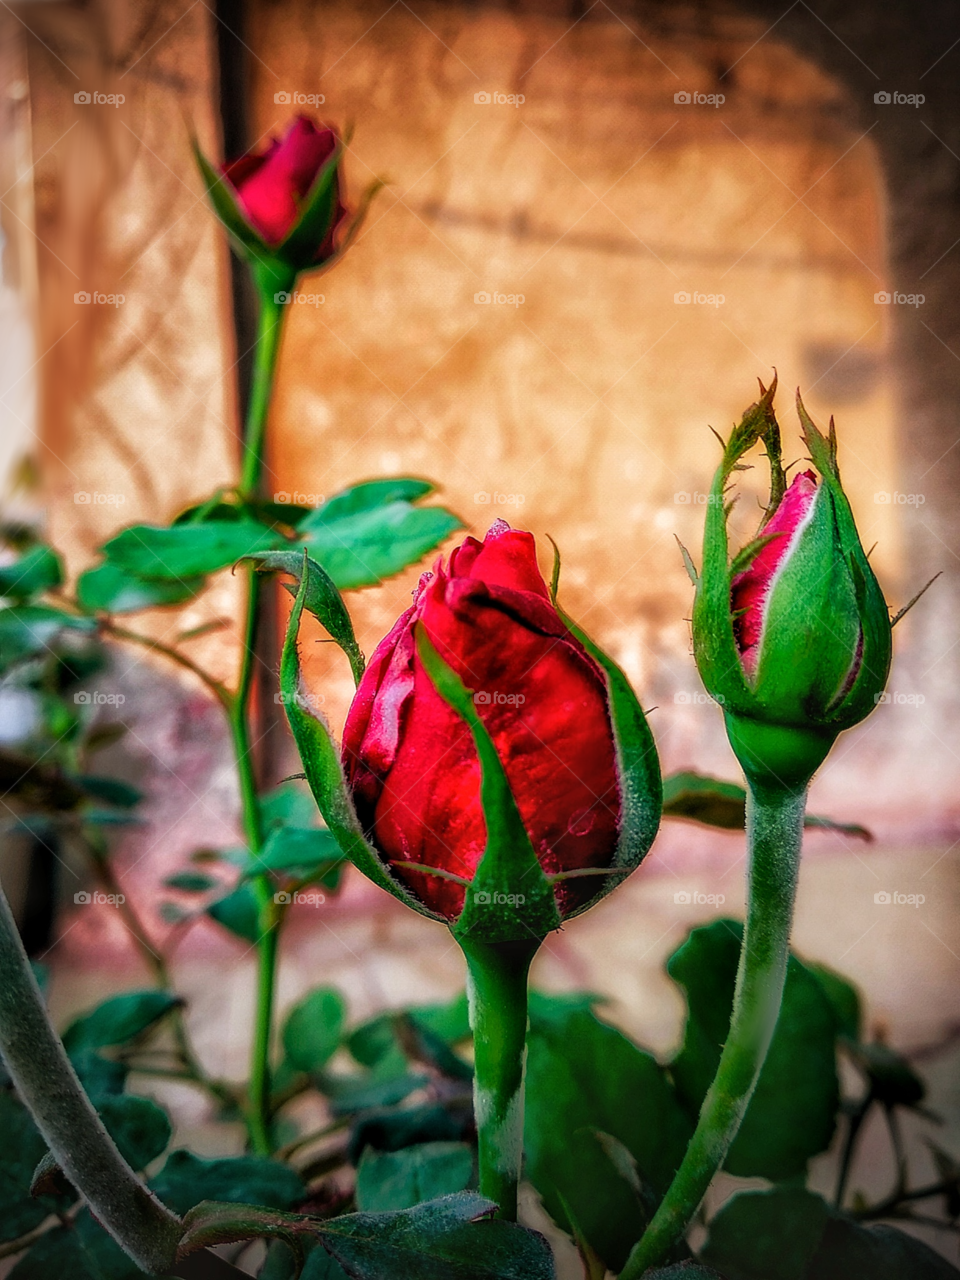 red rose beautiful